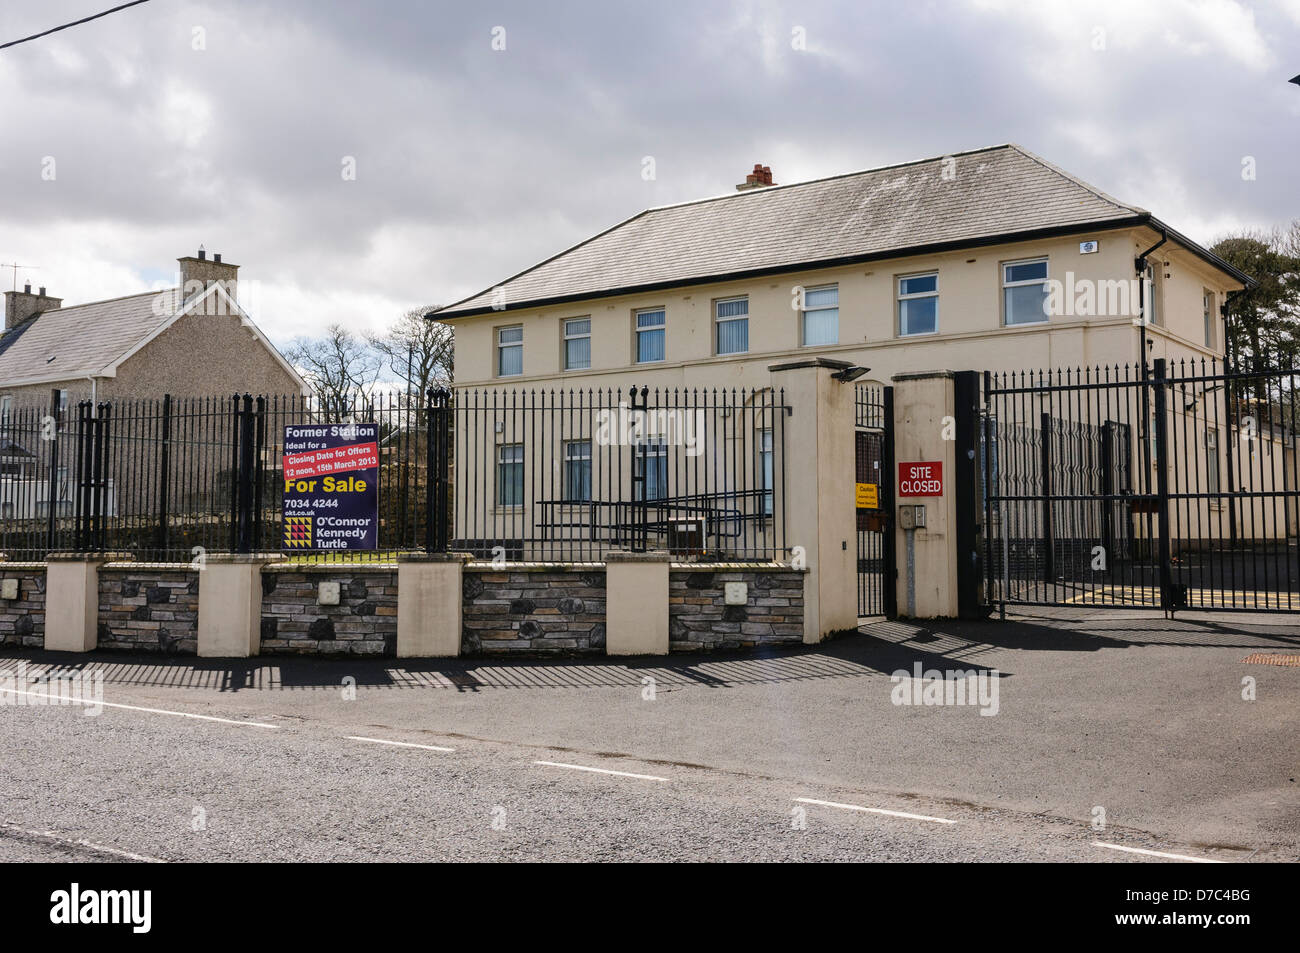 Ex RUC/PSNI stazione di polizia per la vendita dopo essere stato chiuso. Foto Stock